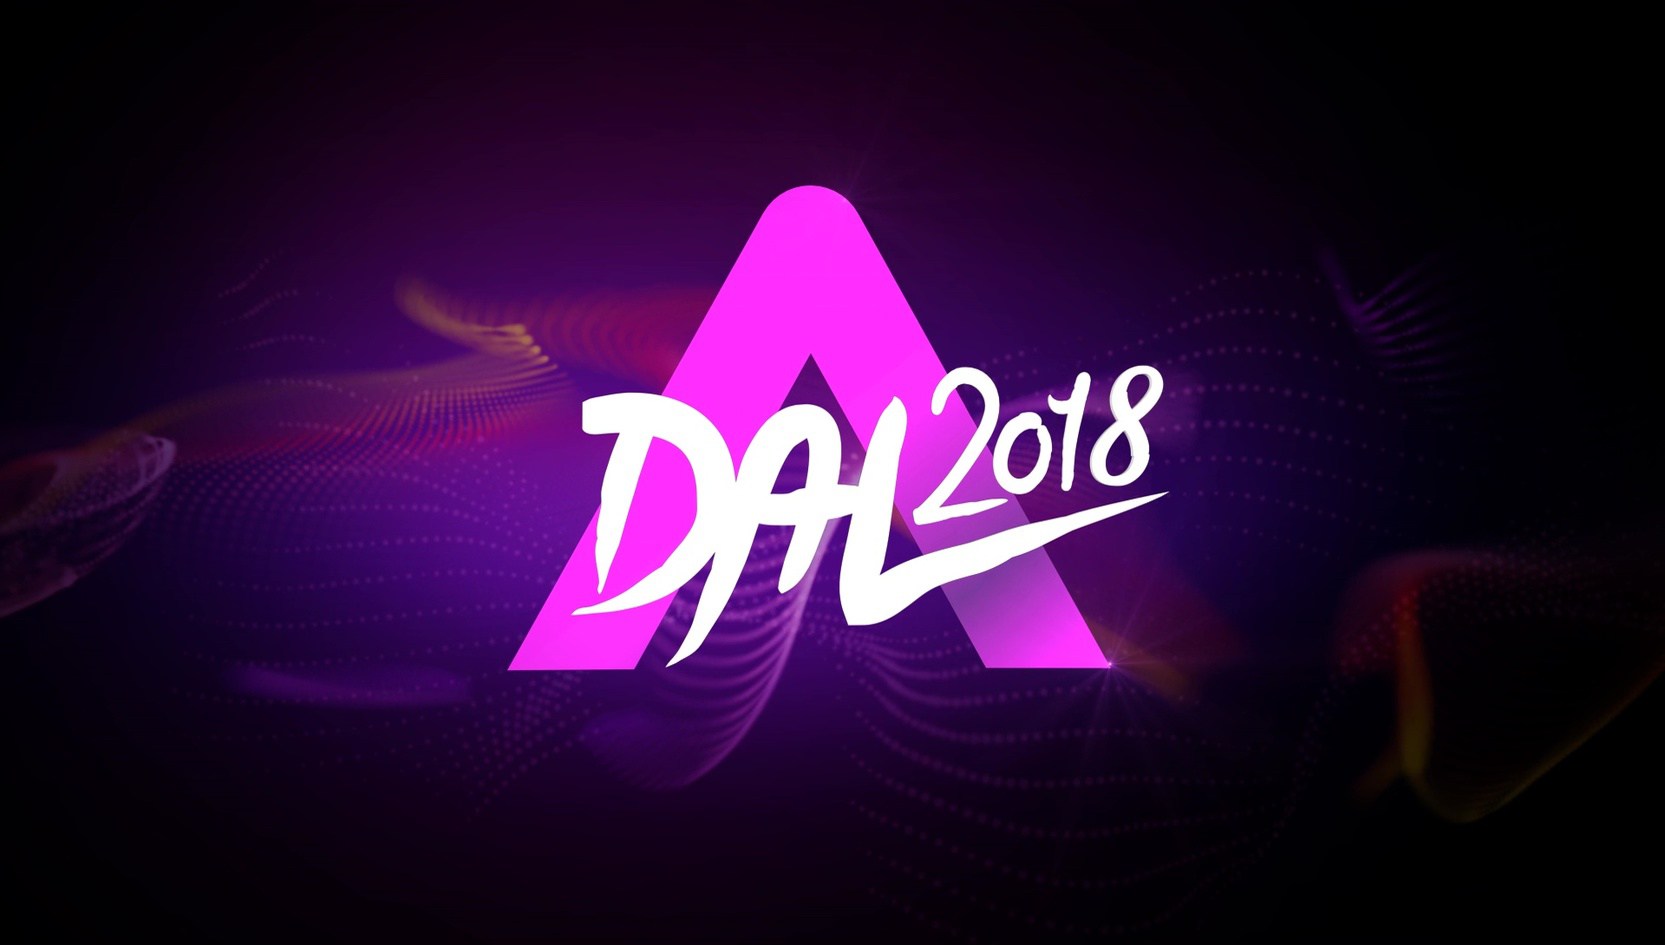 A Dal 2018